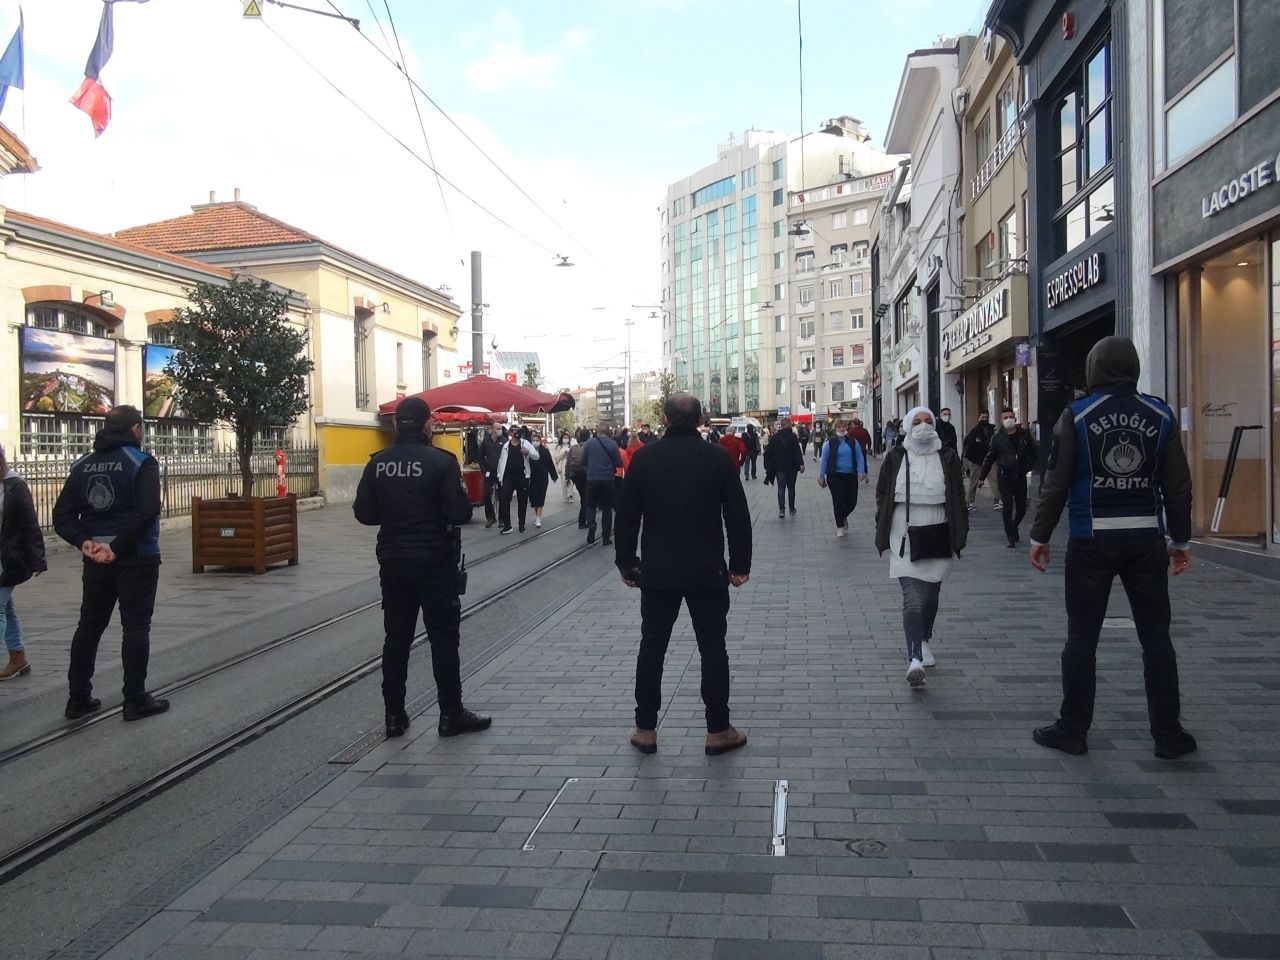 İstanbul'da korona 'kıran'a döndü! HES kırmızı alarm veriyor sokağa çıkma yasağı çağrısı